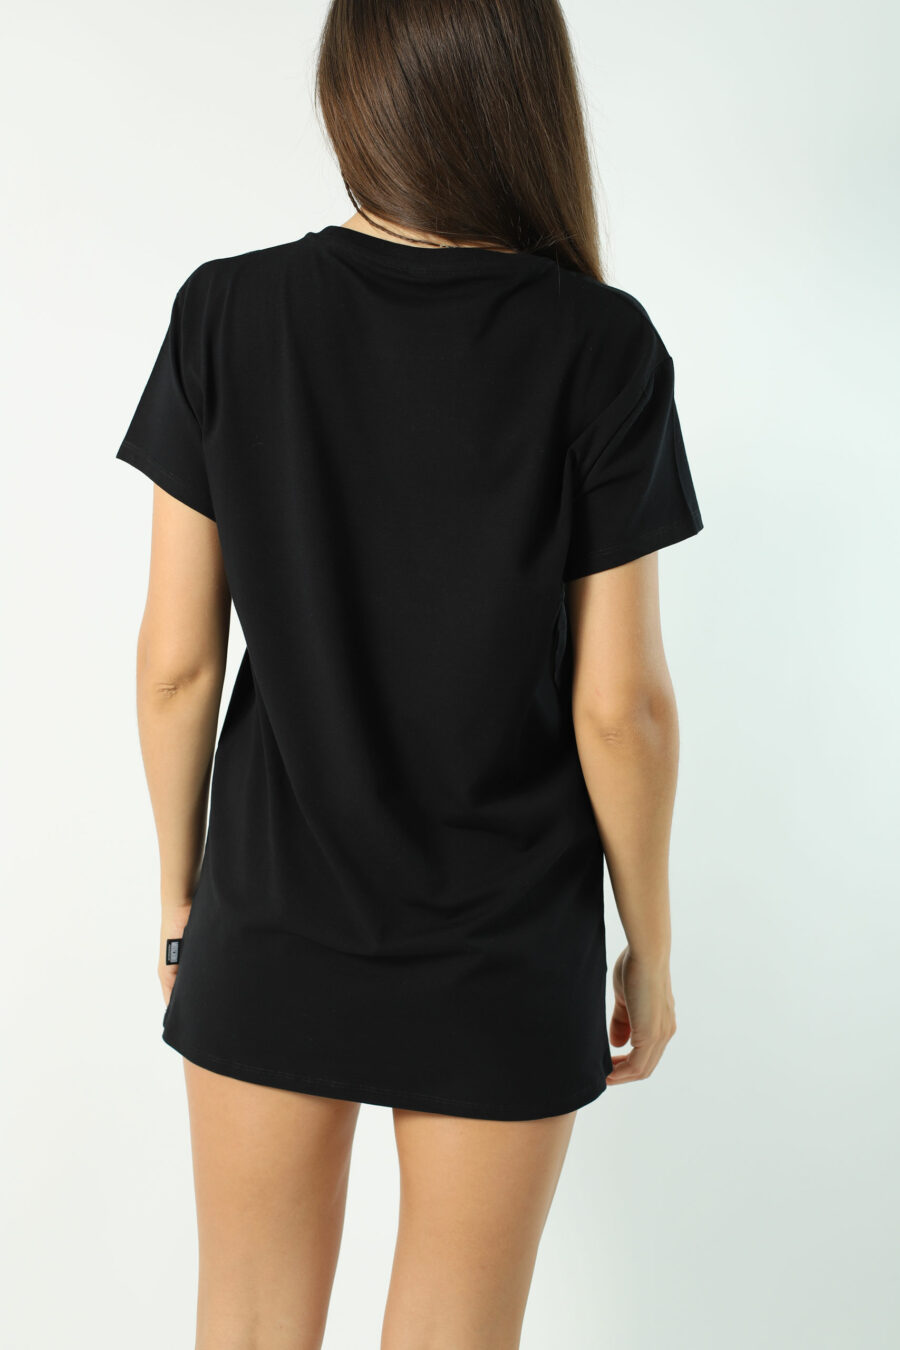 T-shirt maxi preta com mini logótipo de urso por baixo - Fotos 2800